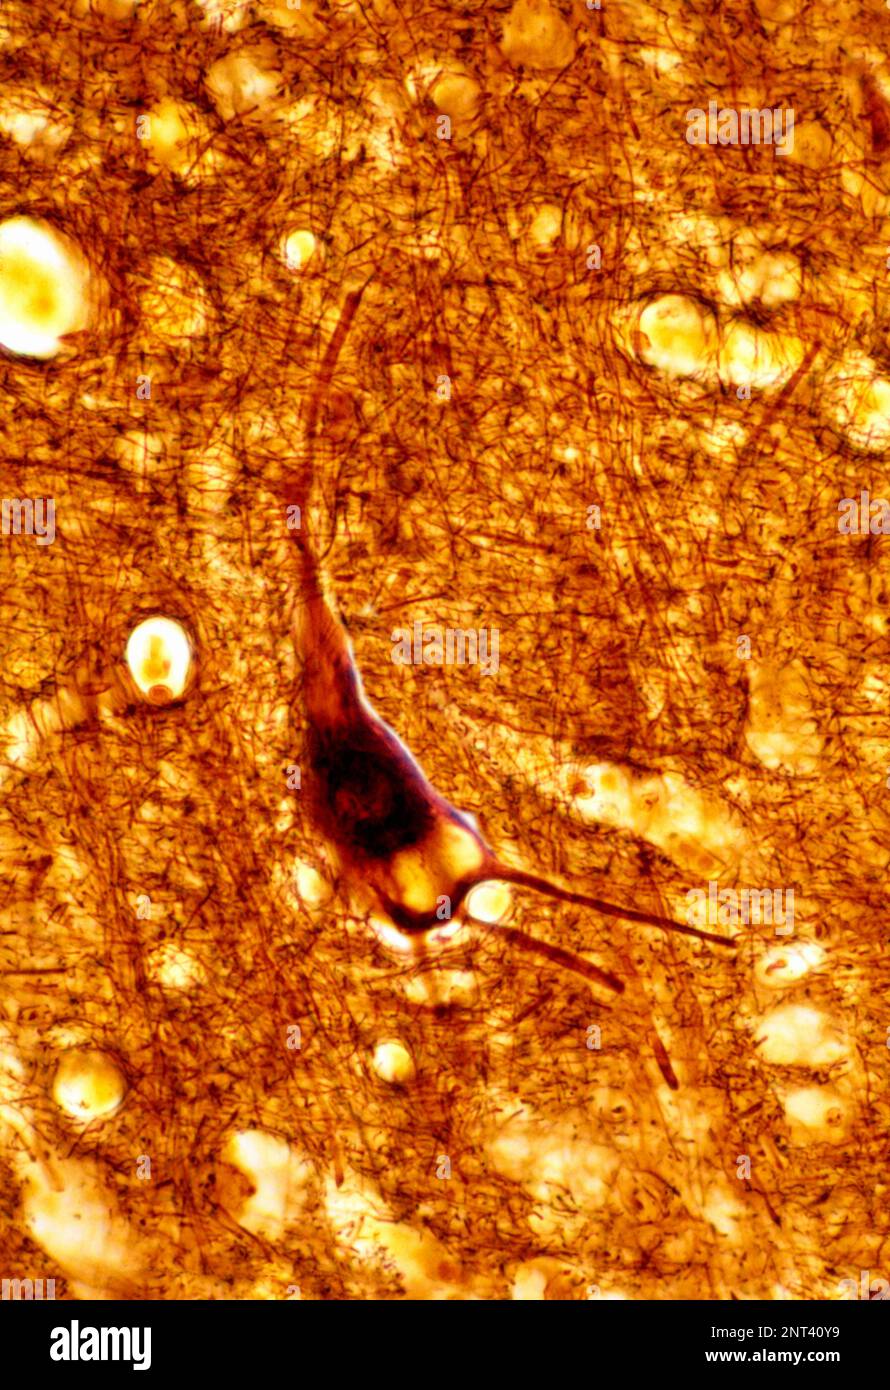 Micrographe léger d'un cortex cérébral humain d'un cerebrum sénile, coloré avec une méthode de l'argent, montrant un grand dépôt de lipofuscine dans un n pyramidal Banque D'Images